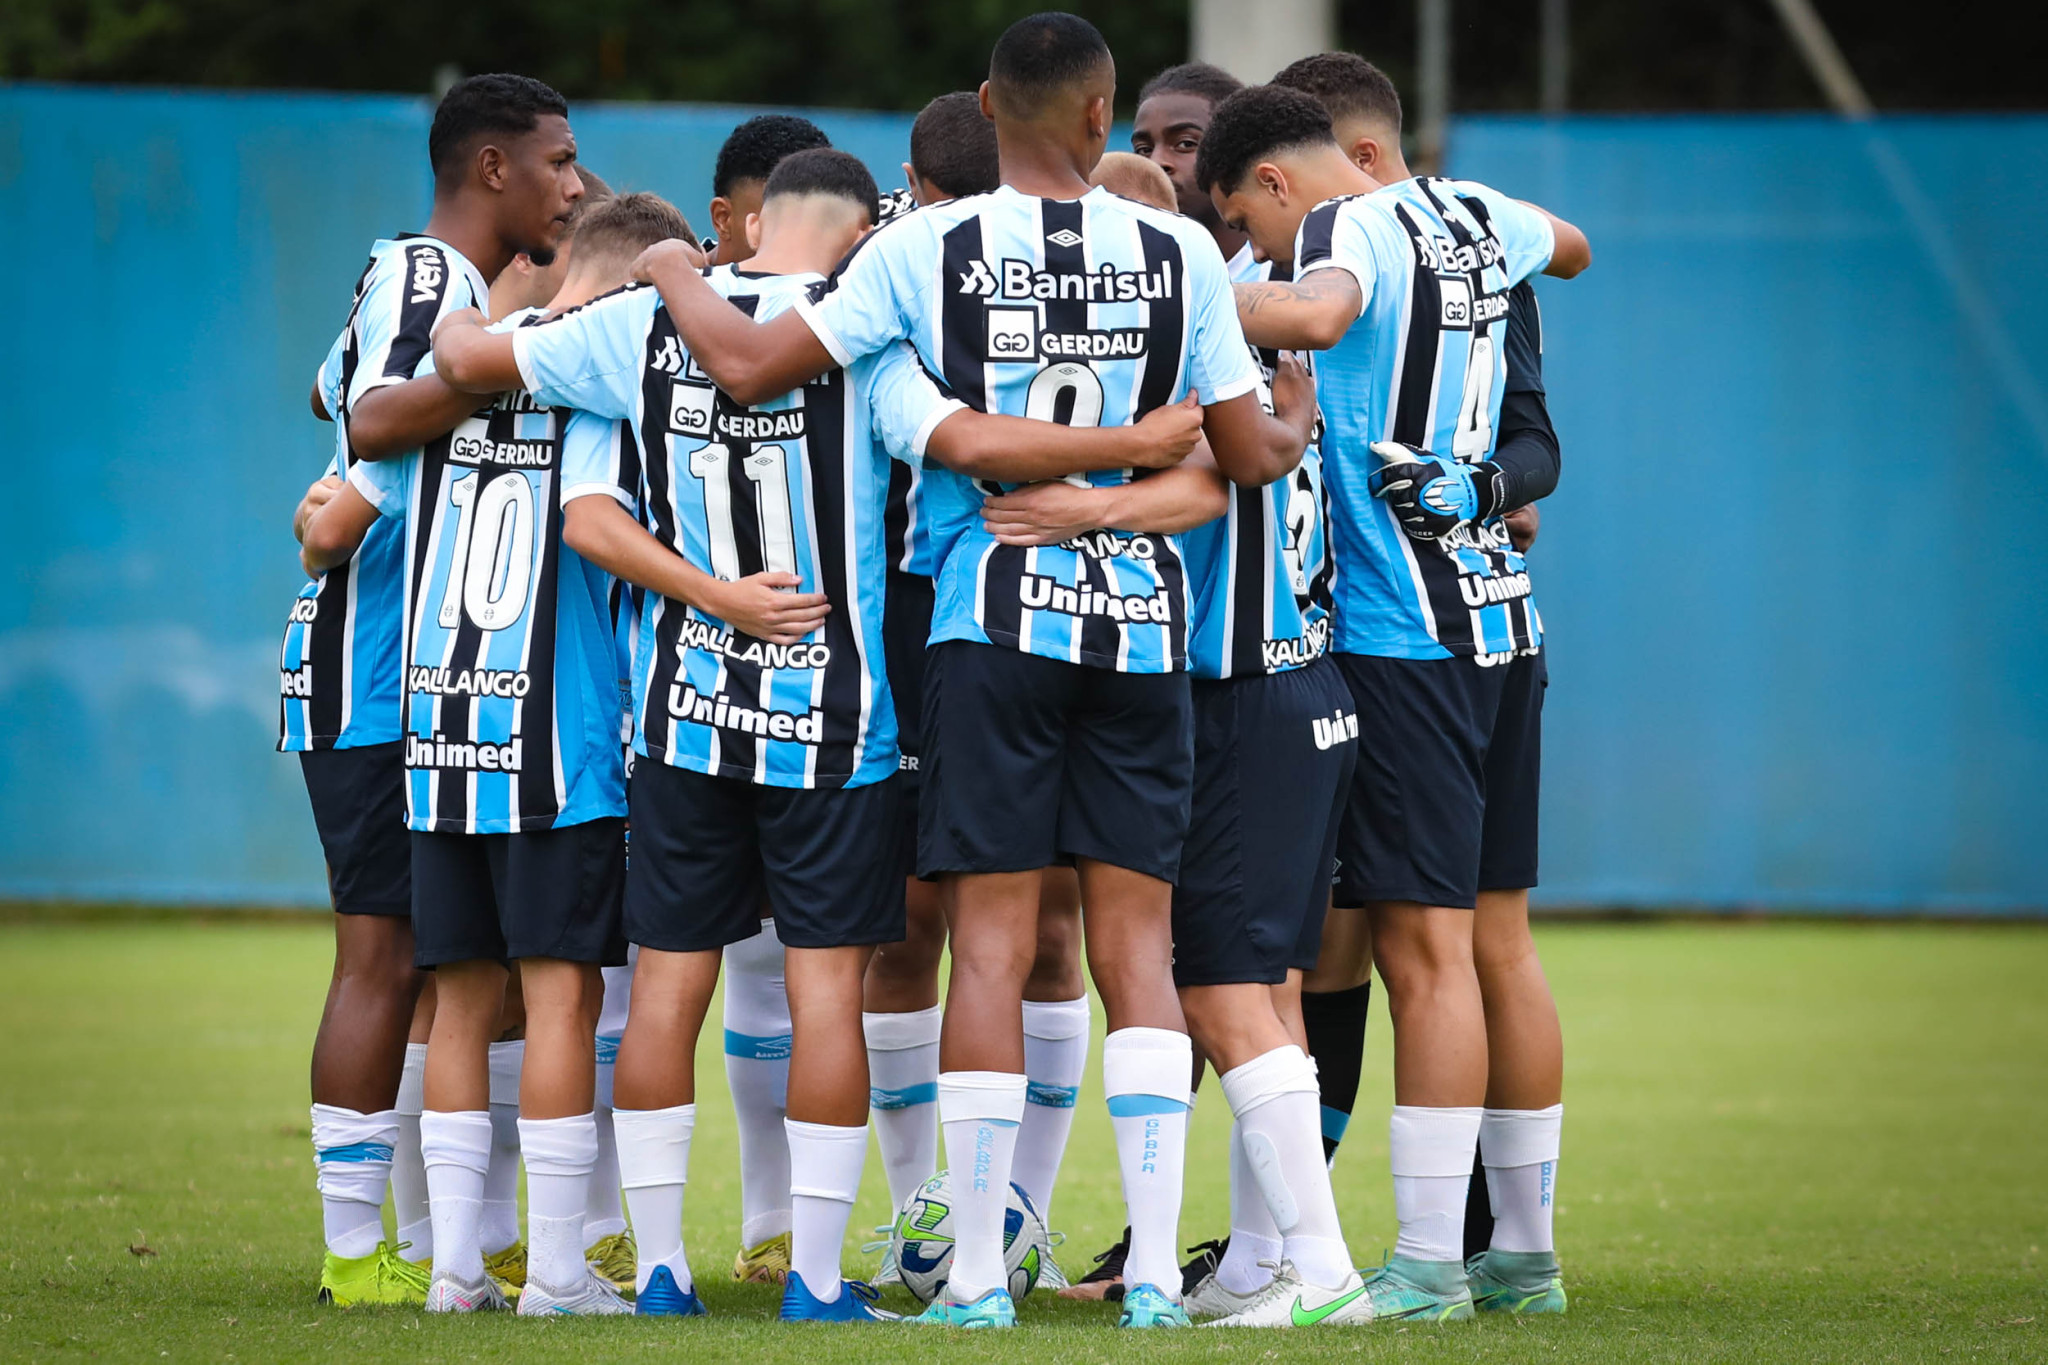 Serviço de Jogo: Internacional x Grêmio – Copa do Brasil Sub-20